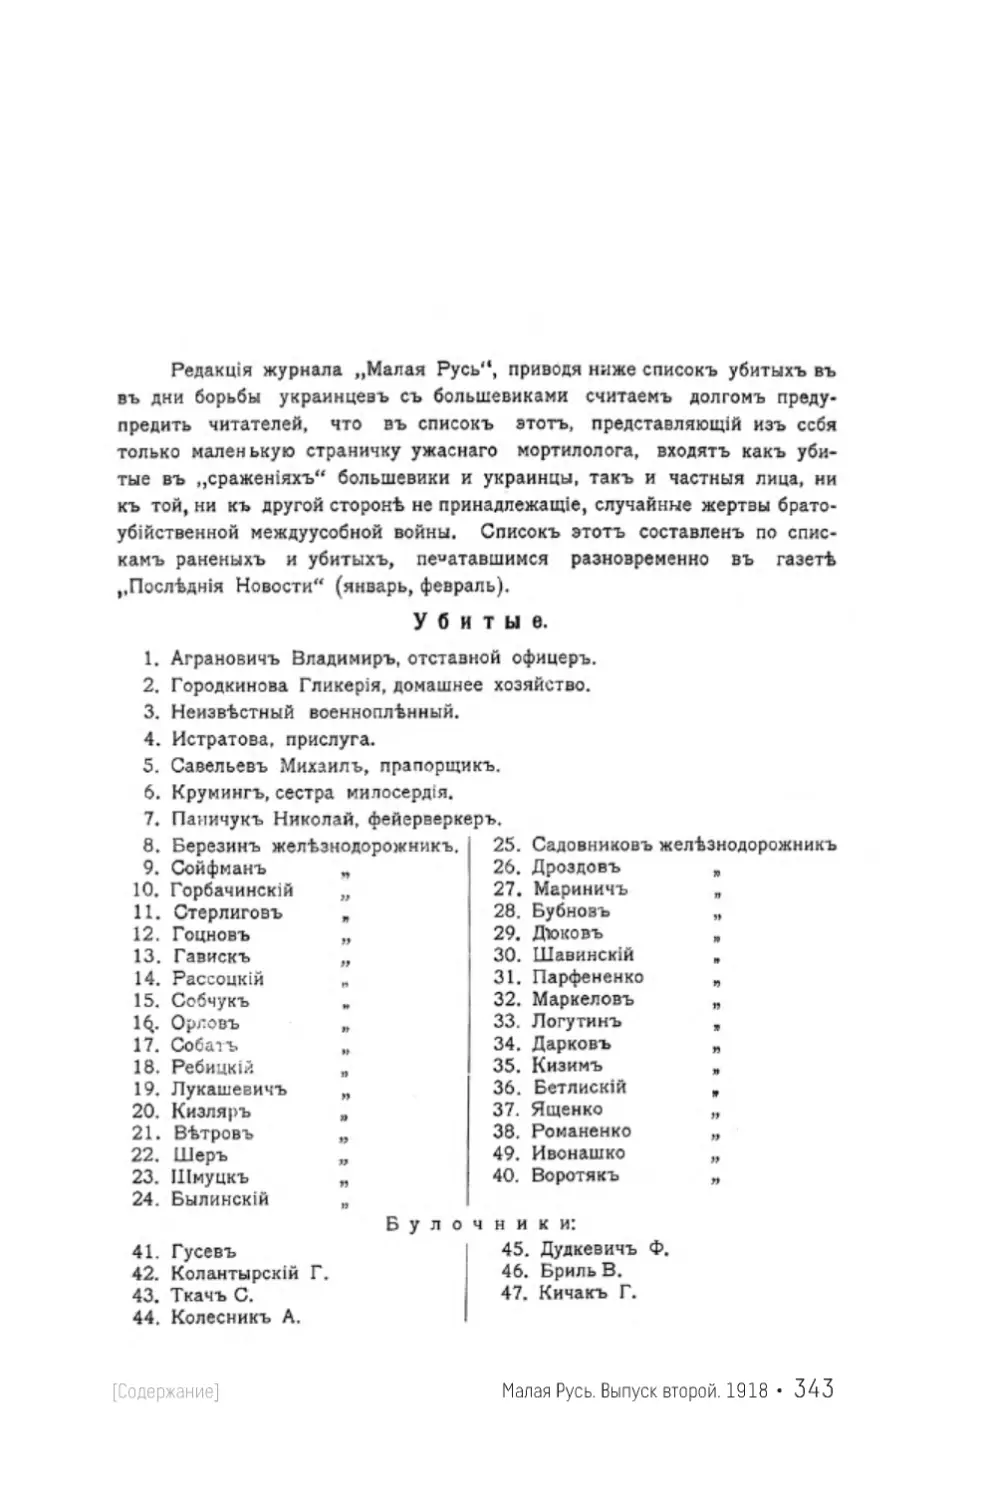 [«...список убитых в дни борьбы украинцев с большевиками...»]